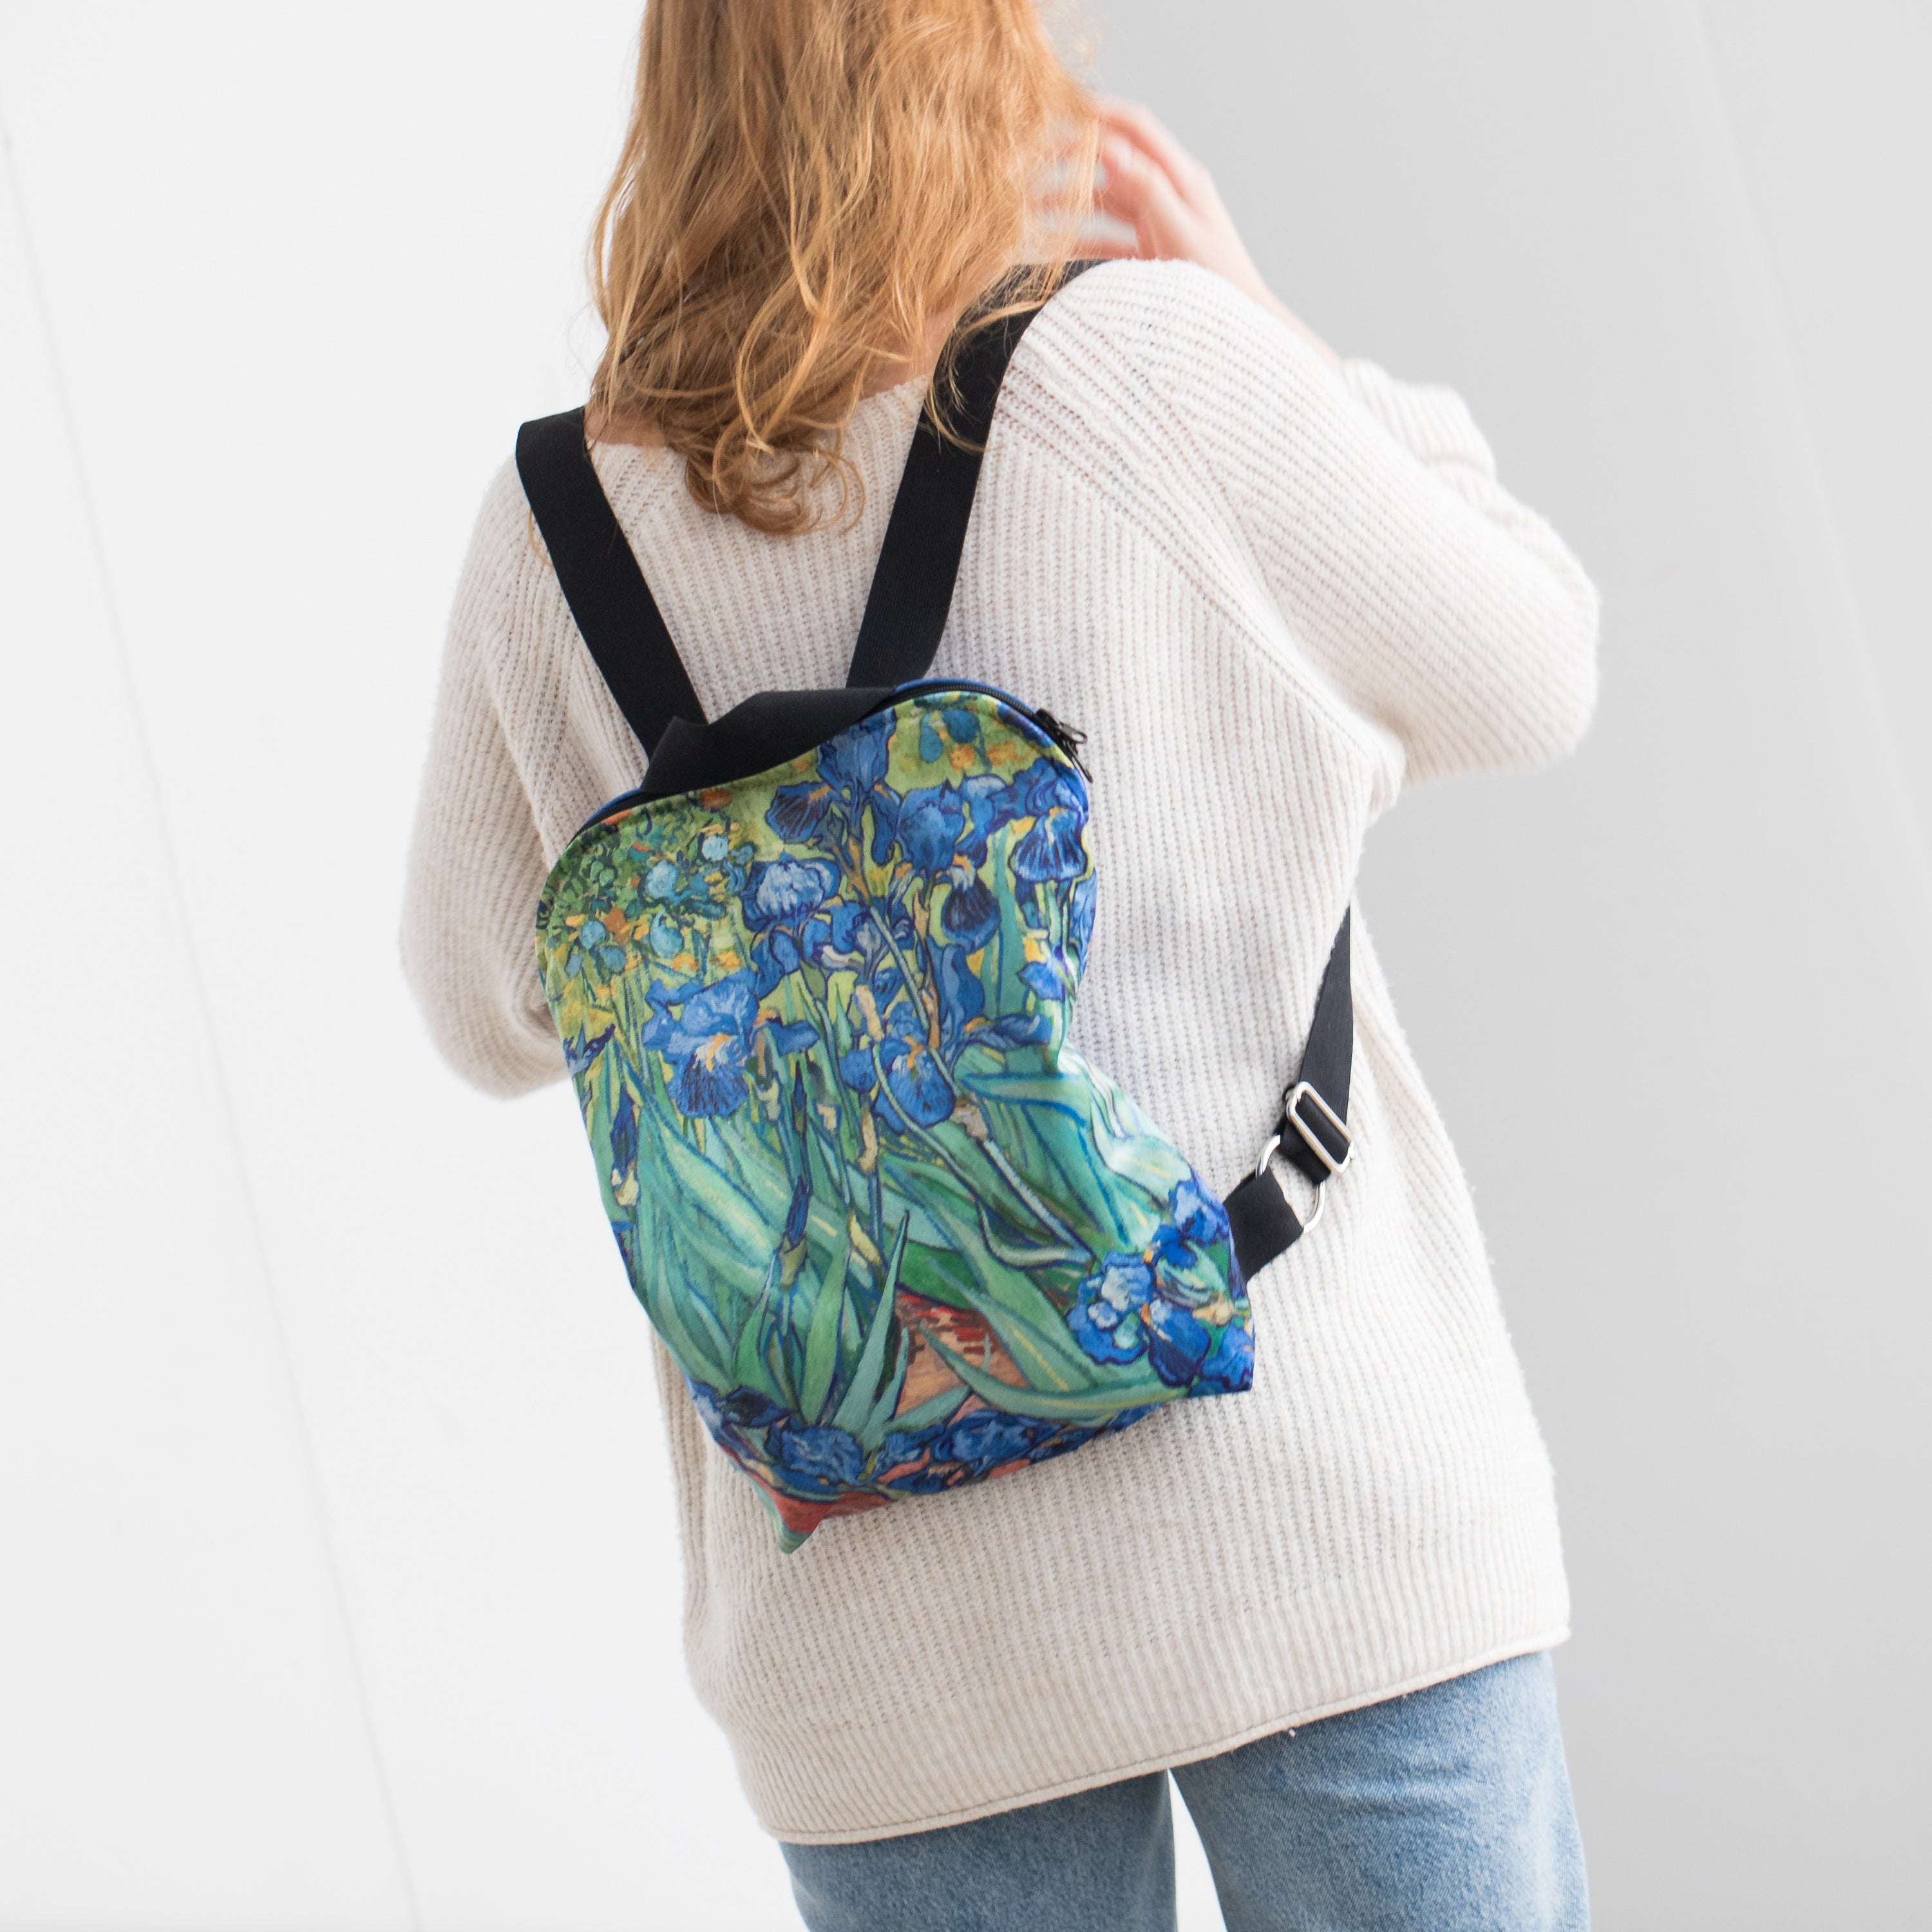 Backpack Vincent van Gogh "Irises"